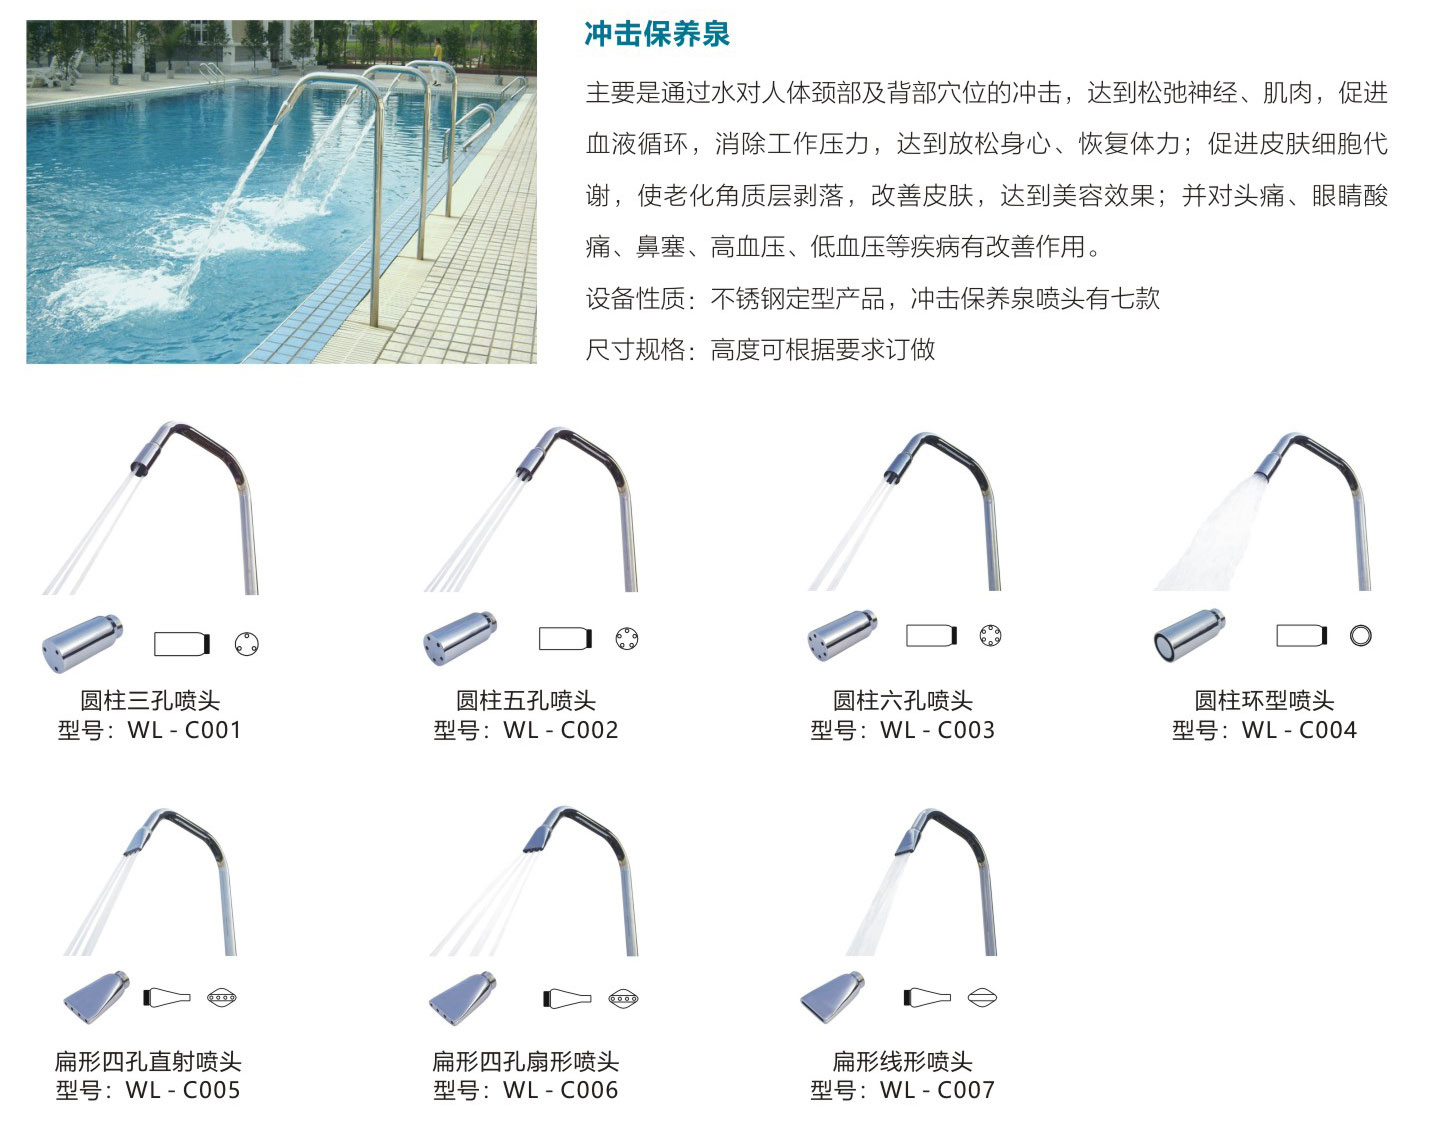 11水疗水功能设备中文-4-2_05.jpg